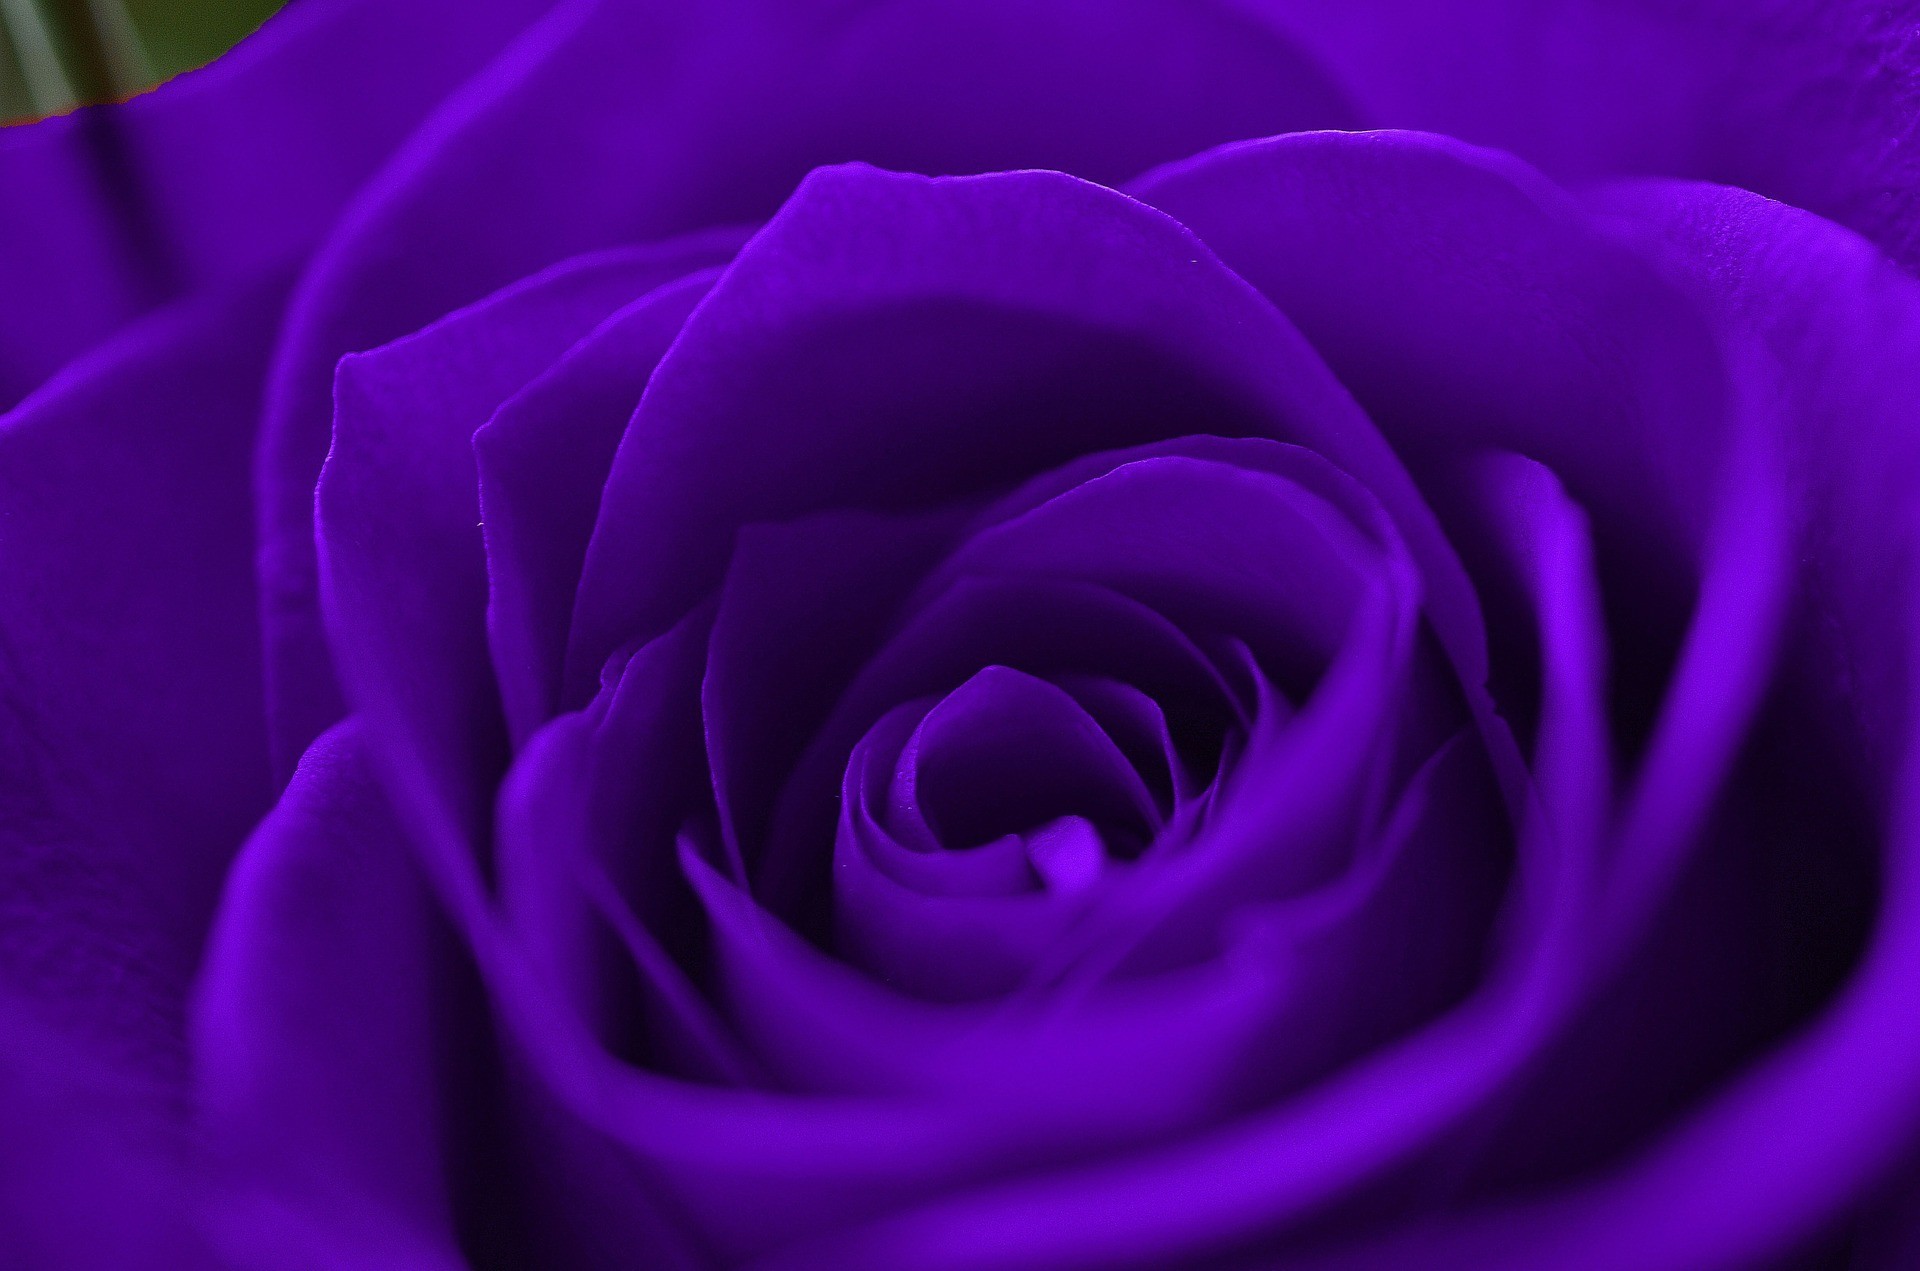 Sắc tím và đỏ hòa quyện lại tạo nên hình nền Hoa hồng tím rực rỡ này. Nét đẹp sắc nét của chiếc hoa sẽ khiến người xem cảm thấy thích thú và sự quyến rũ không thể chối từ. Hãy để hình nền này tôn lên vẻ đẹp của màn hình của bạn!